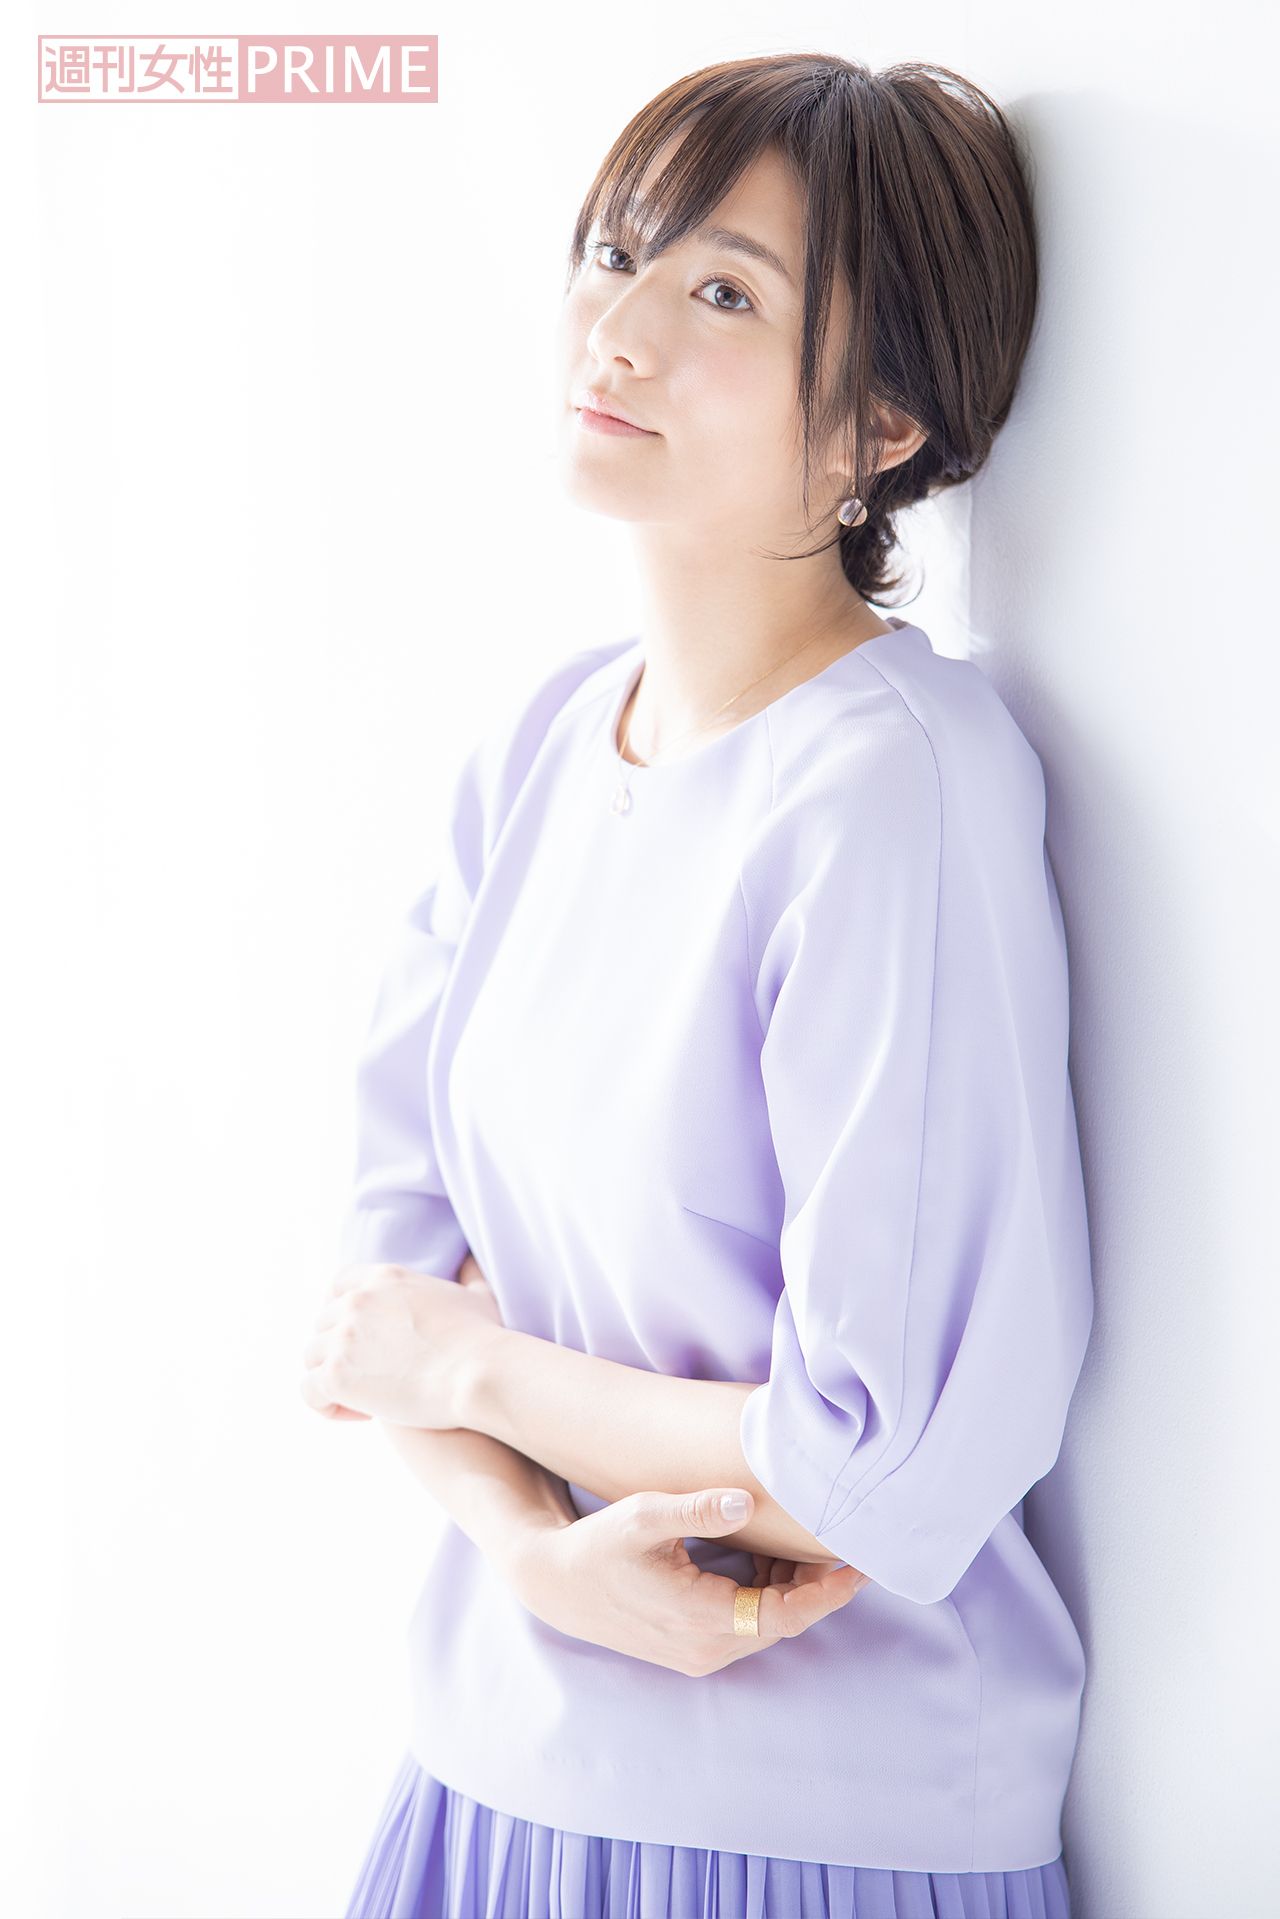 【画像・写真】木村文乃、仕事の目標はあまりない「ただ守りたい自分の“生活”がある」 週刊女性PRIME